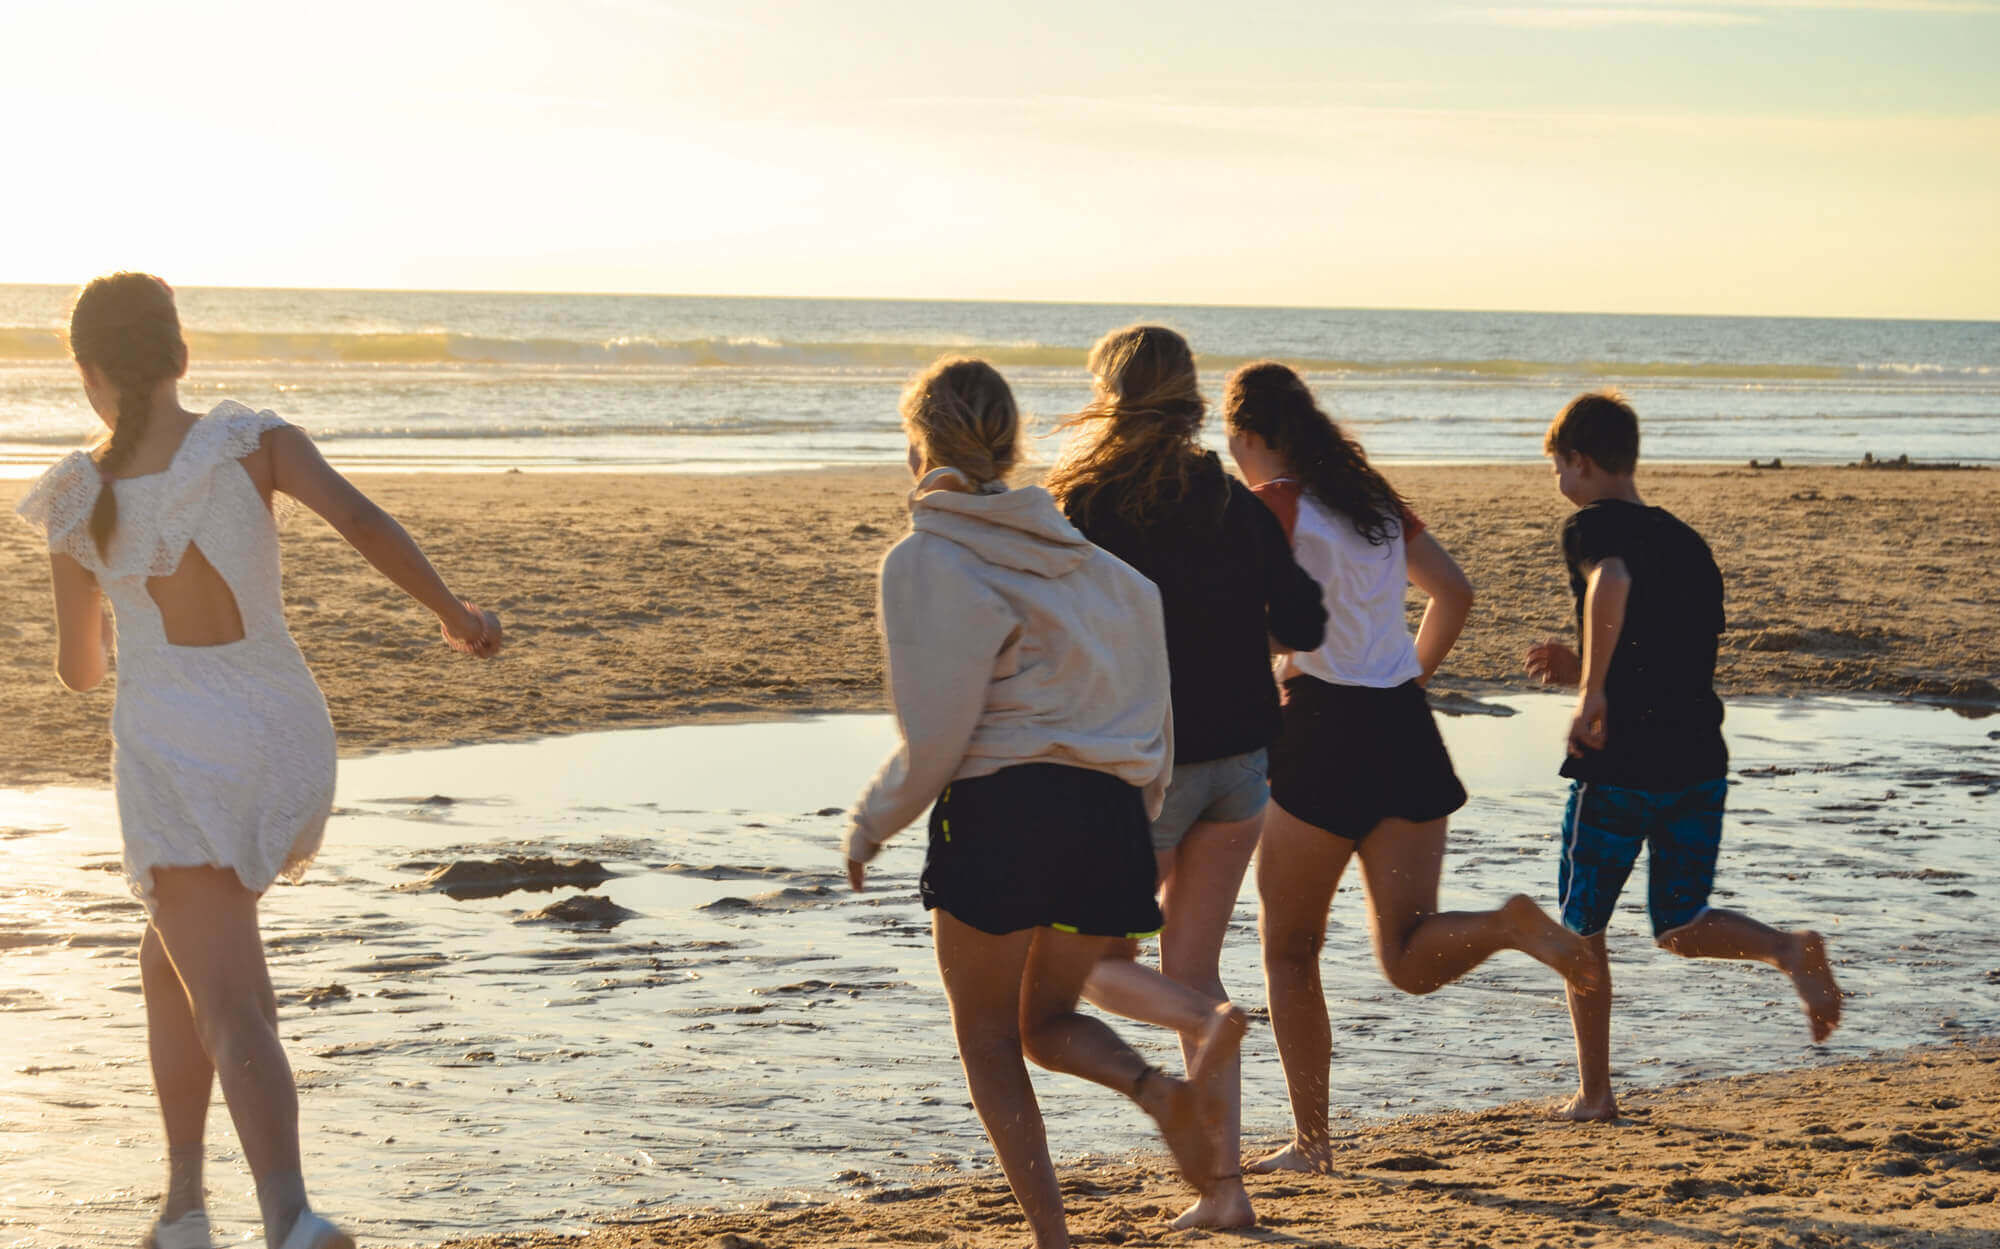 Während des Sonnenuntergangs rennen fünf Jugendliche über den Strand in Richtung des Meeres.